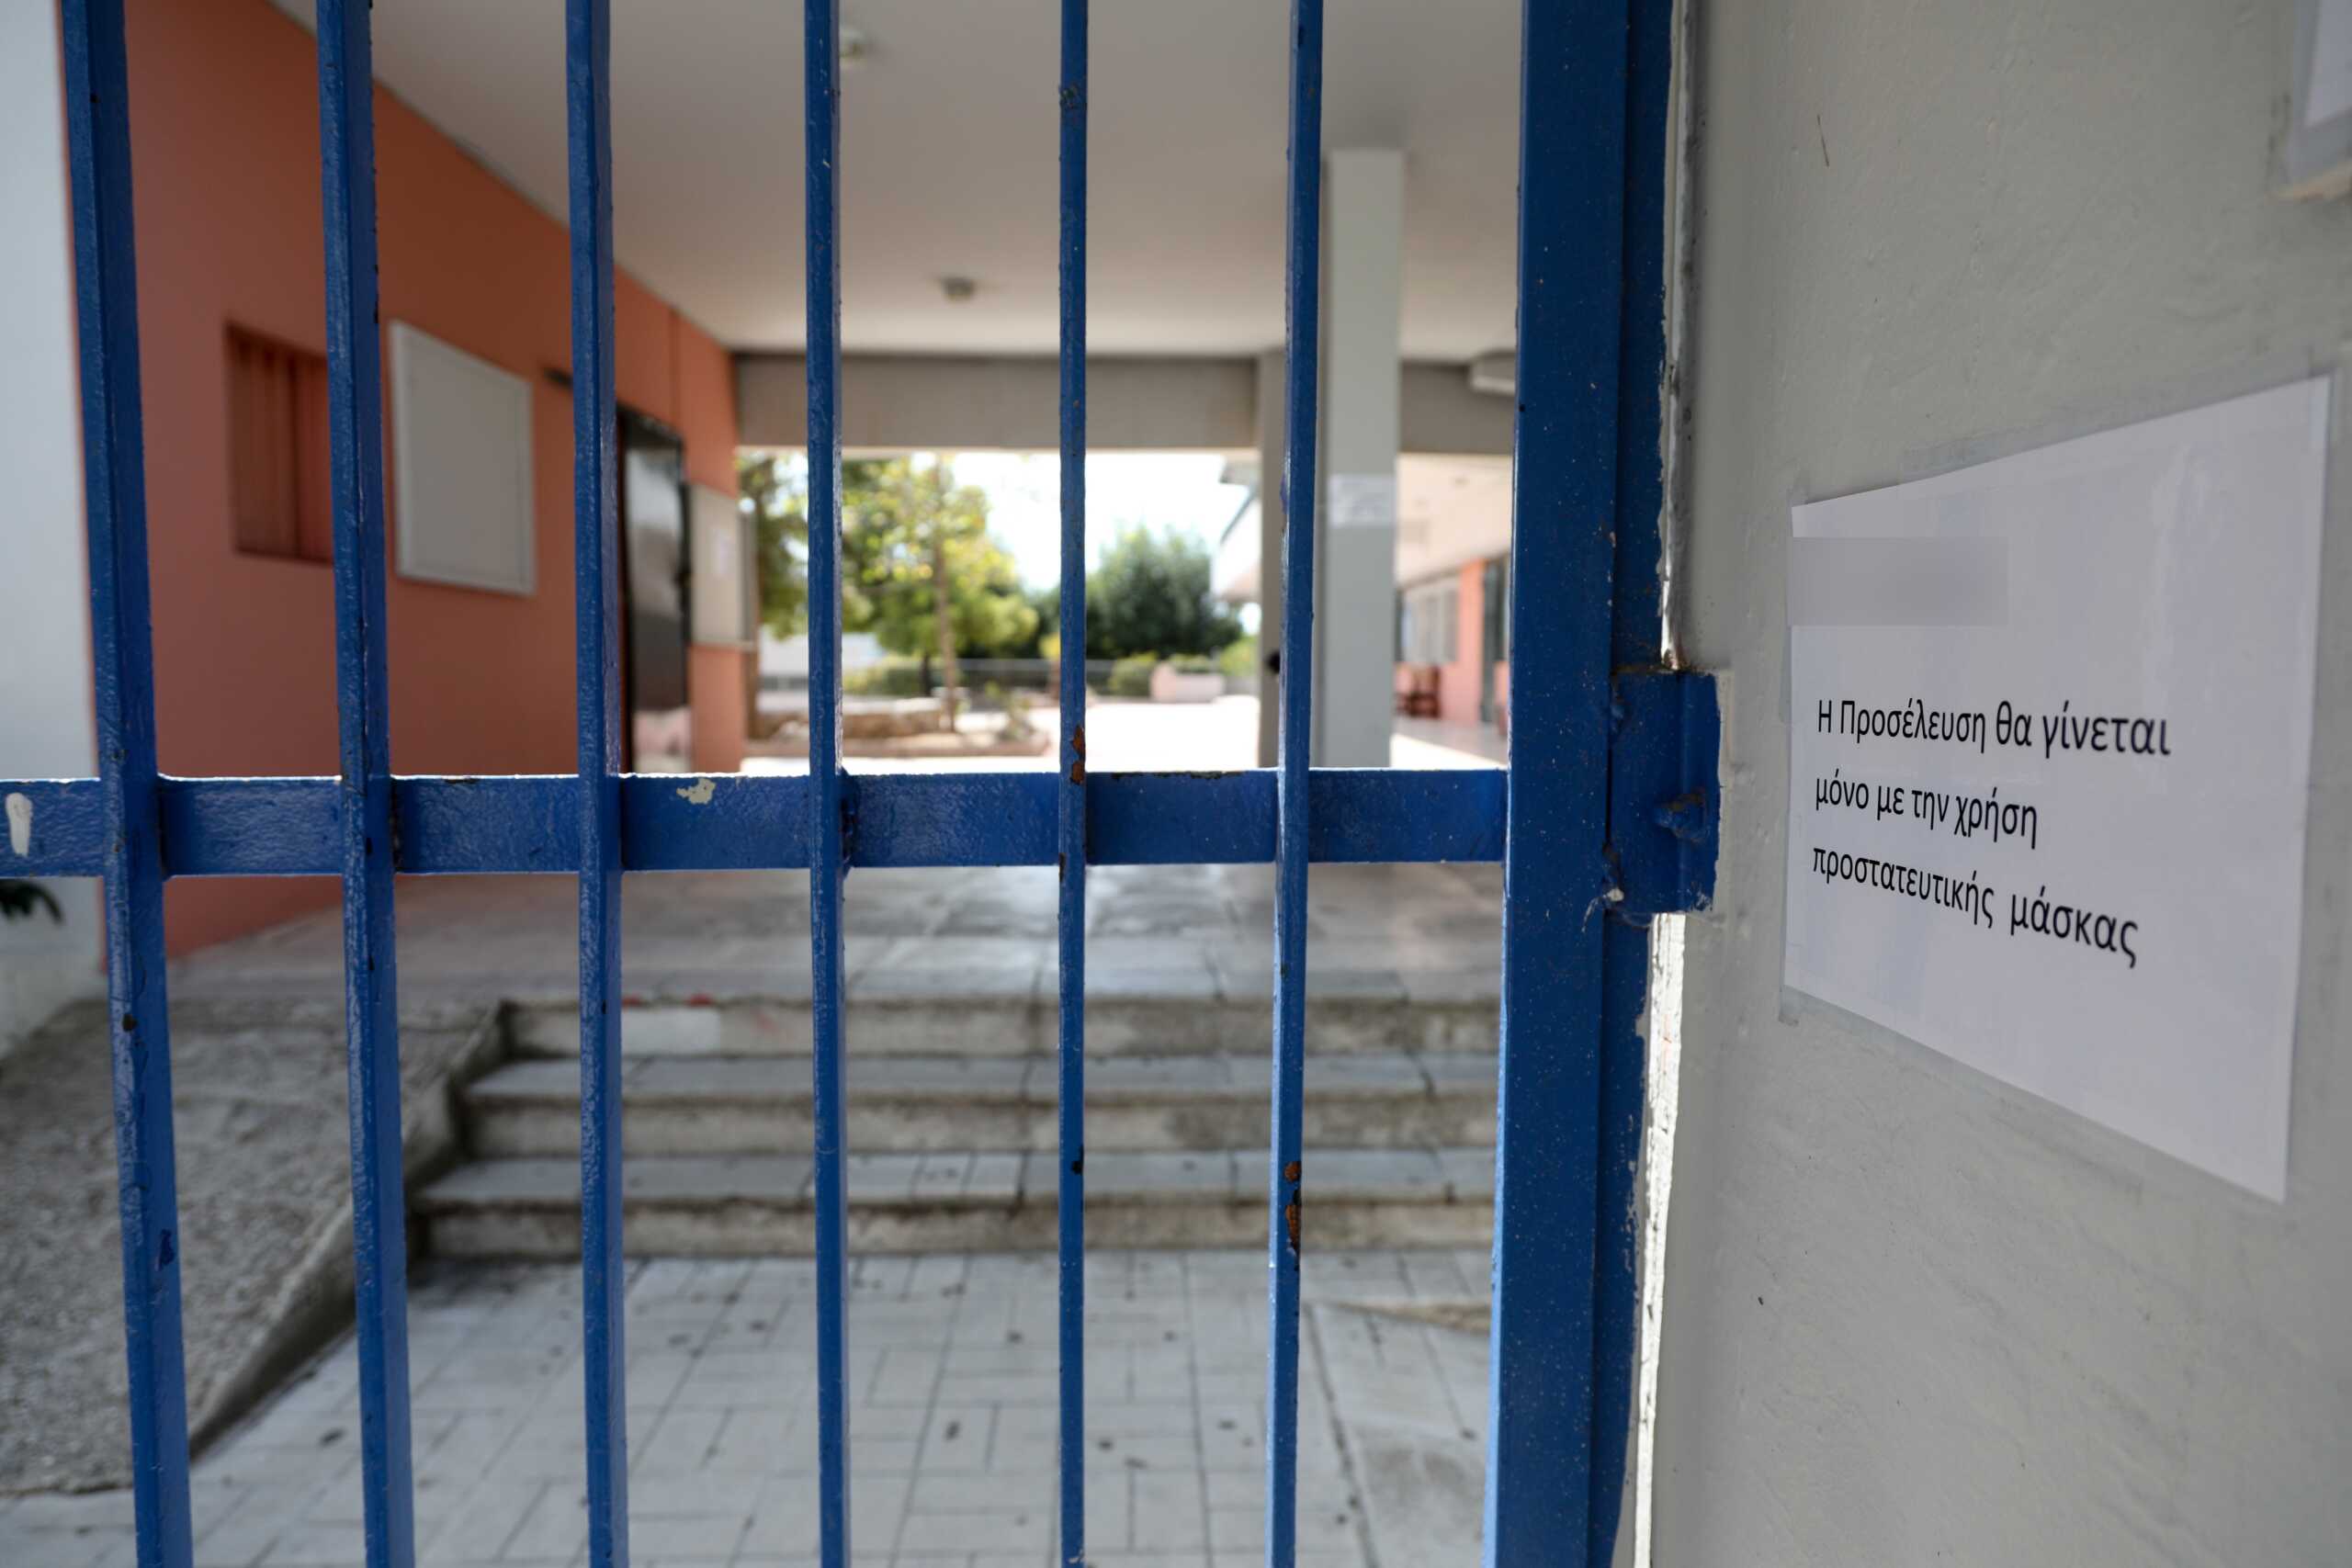 Βόλος: Στο νοσοκομείο δύο 17χρονα παιδιά που κατανάλωσαν χάπια σε σχολείο, τους βρήκαν σε άθλια κατάσταση στην αυλή